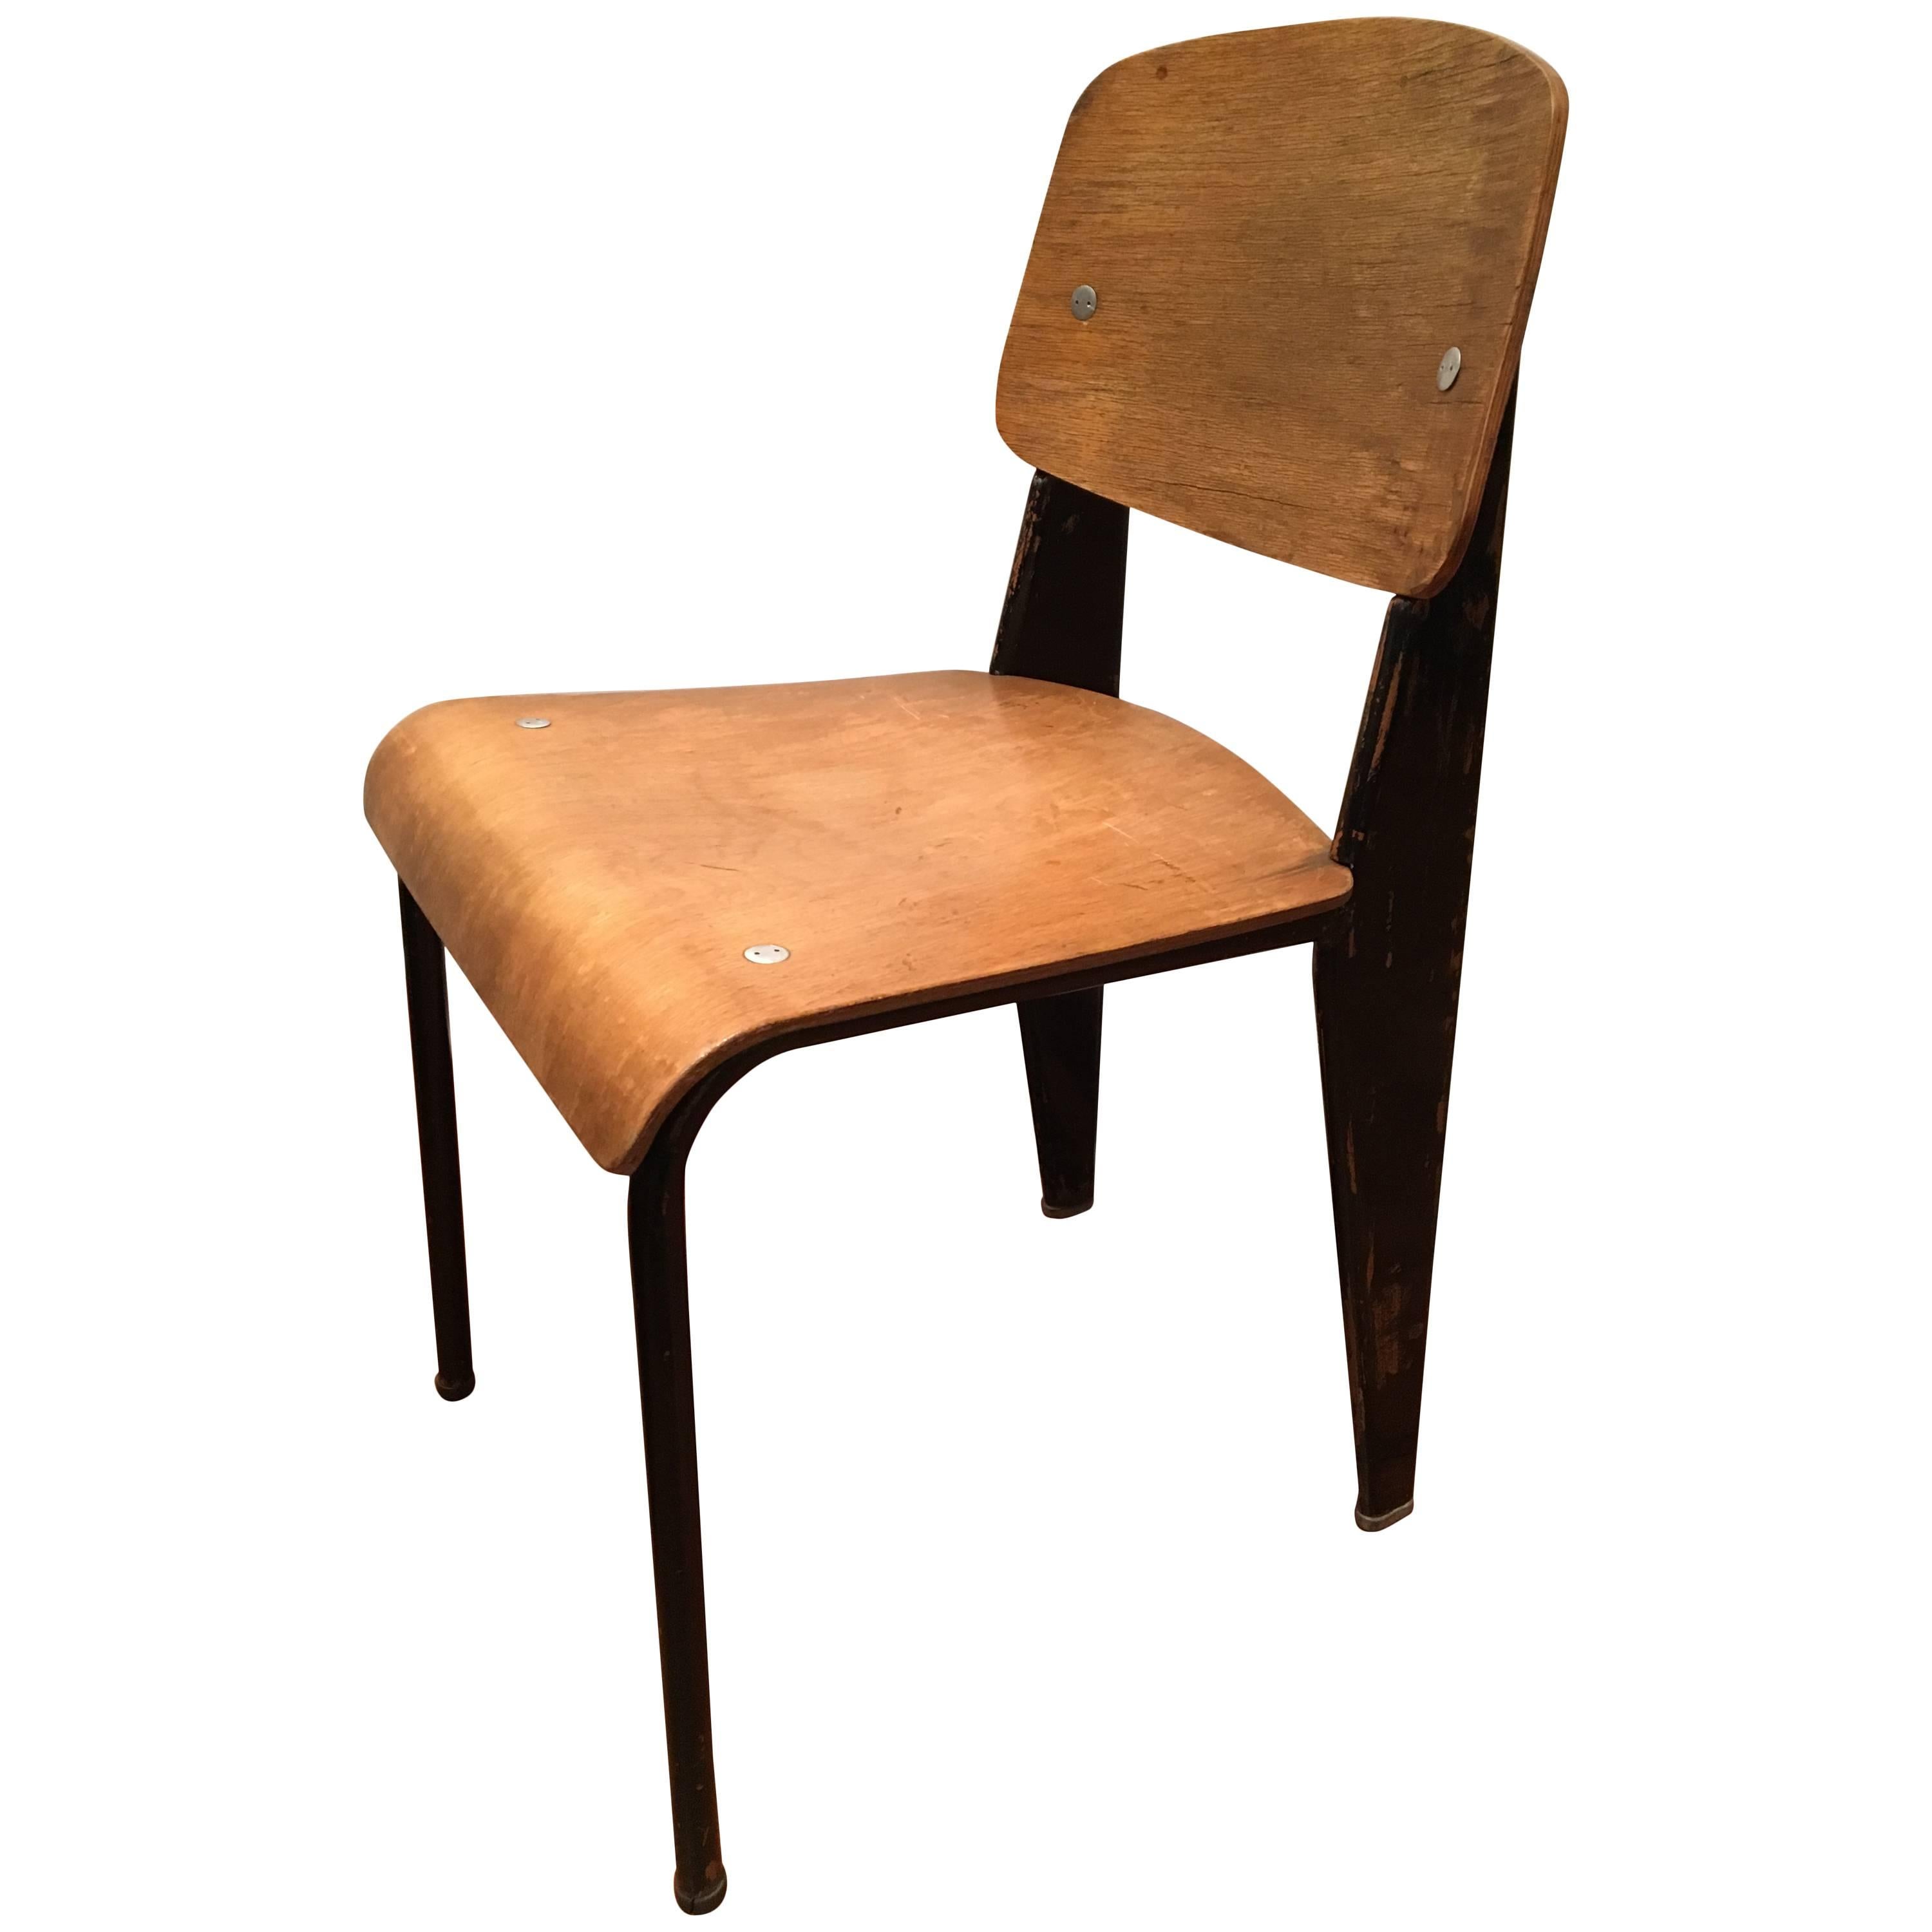 Original Jean Prouve "Metropole" No. 305 Chair